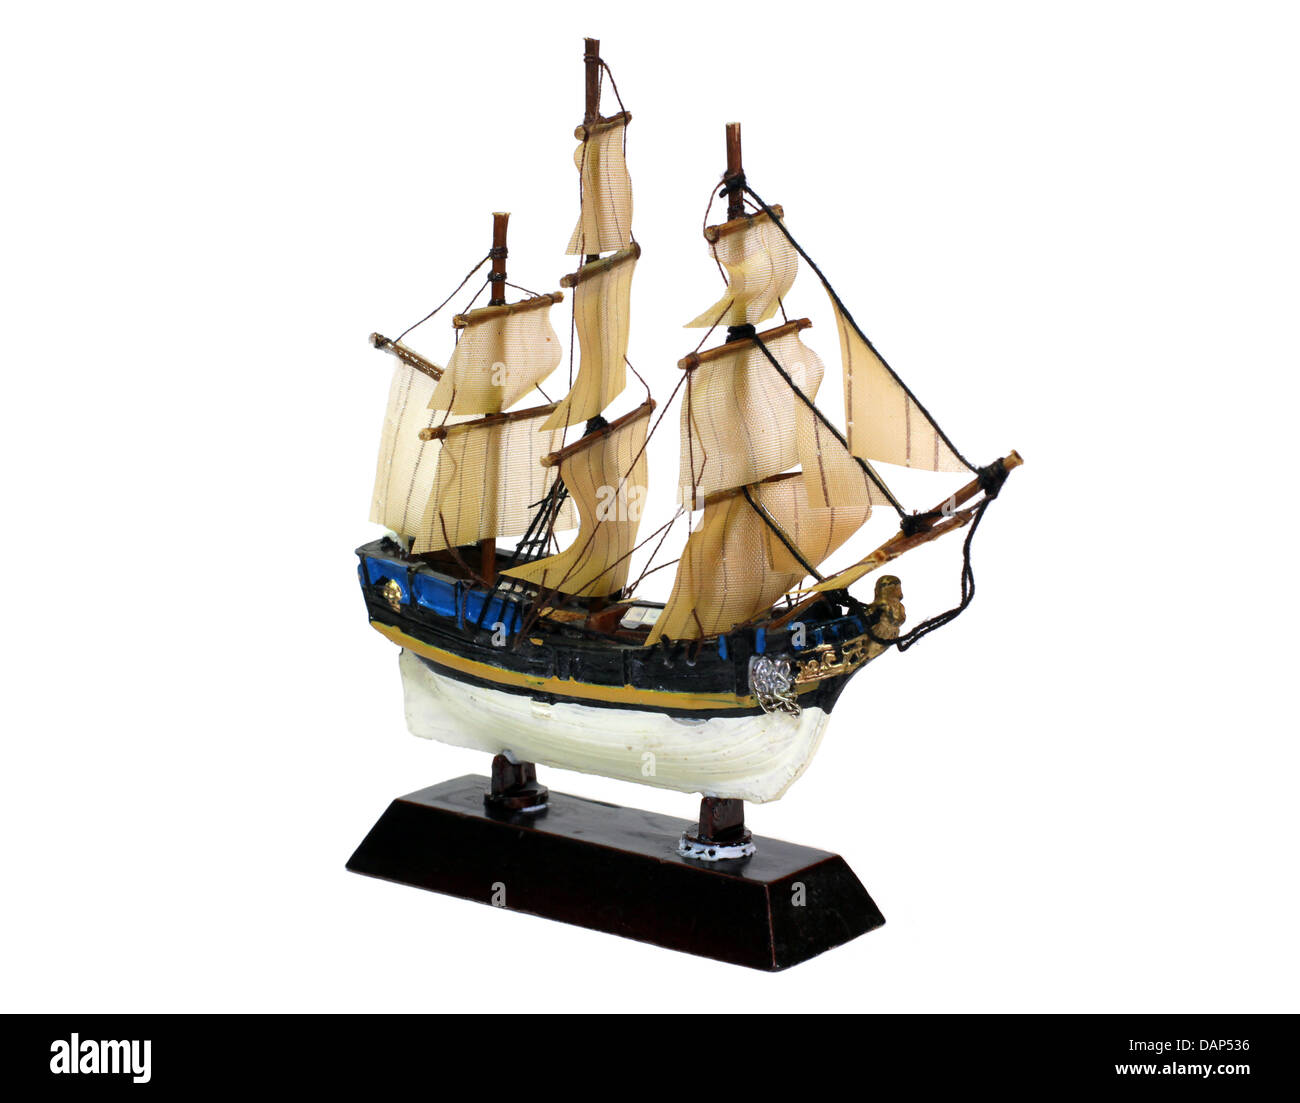 Segeln Vesse (Schiff) Modell isoliert auf weißem Hintergrund Stockfoto